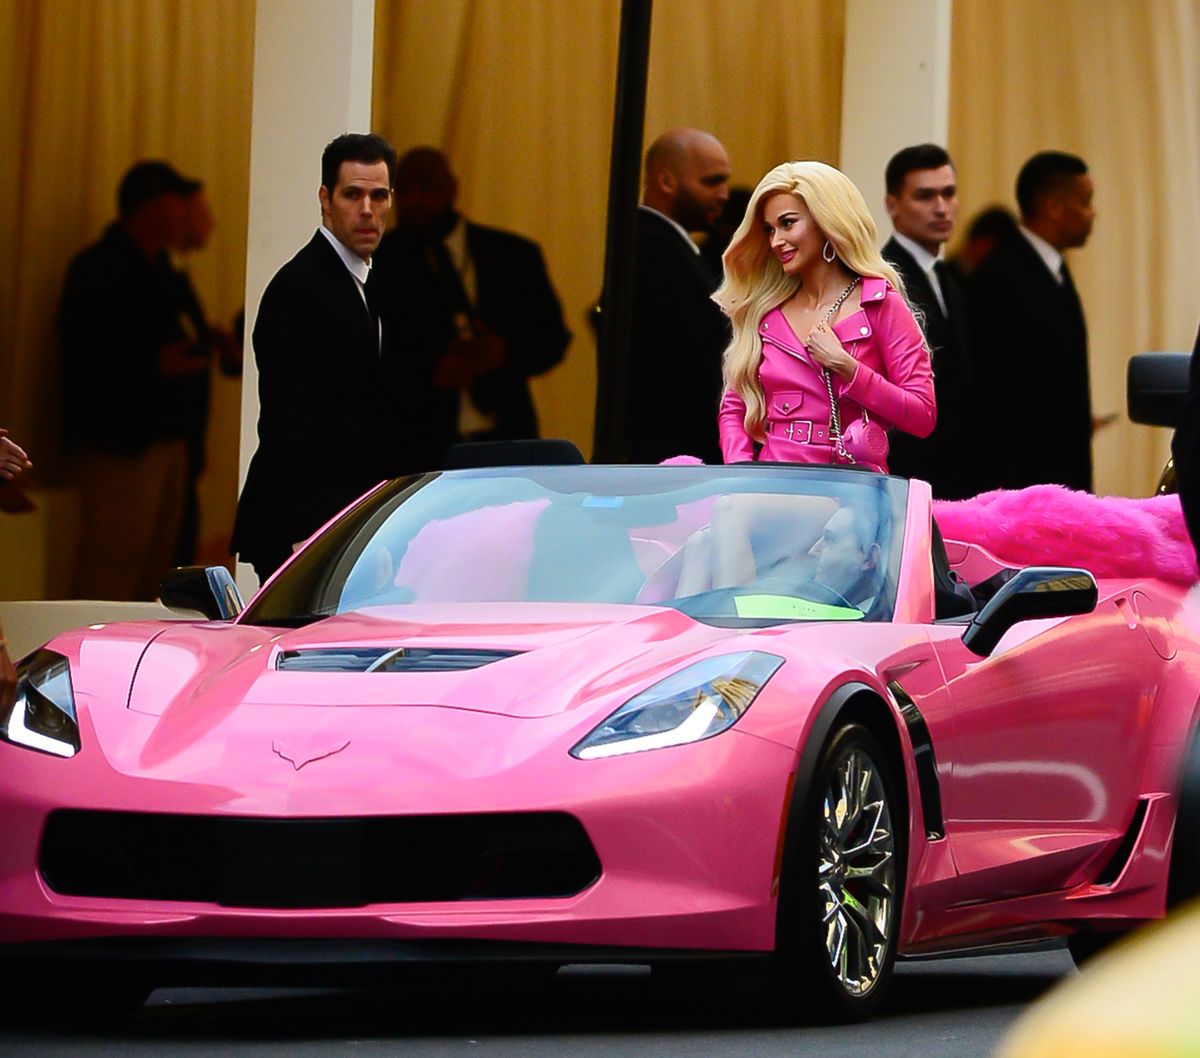 Betekenis Tijdig biologie Kacey Musgraves Arrived to the Met Gala as Barbie in a Pink Corvette